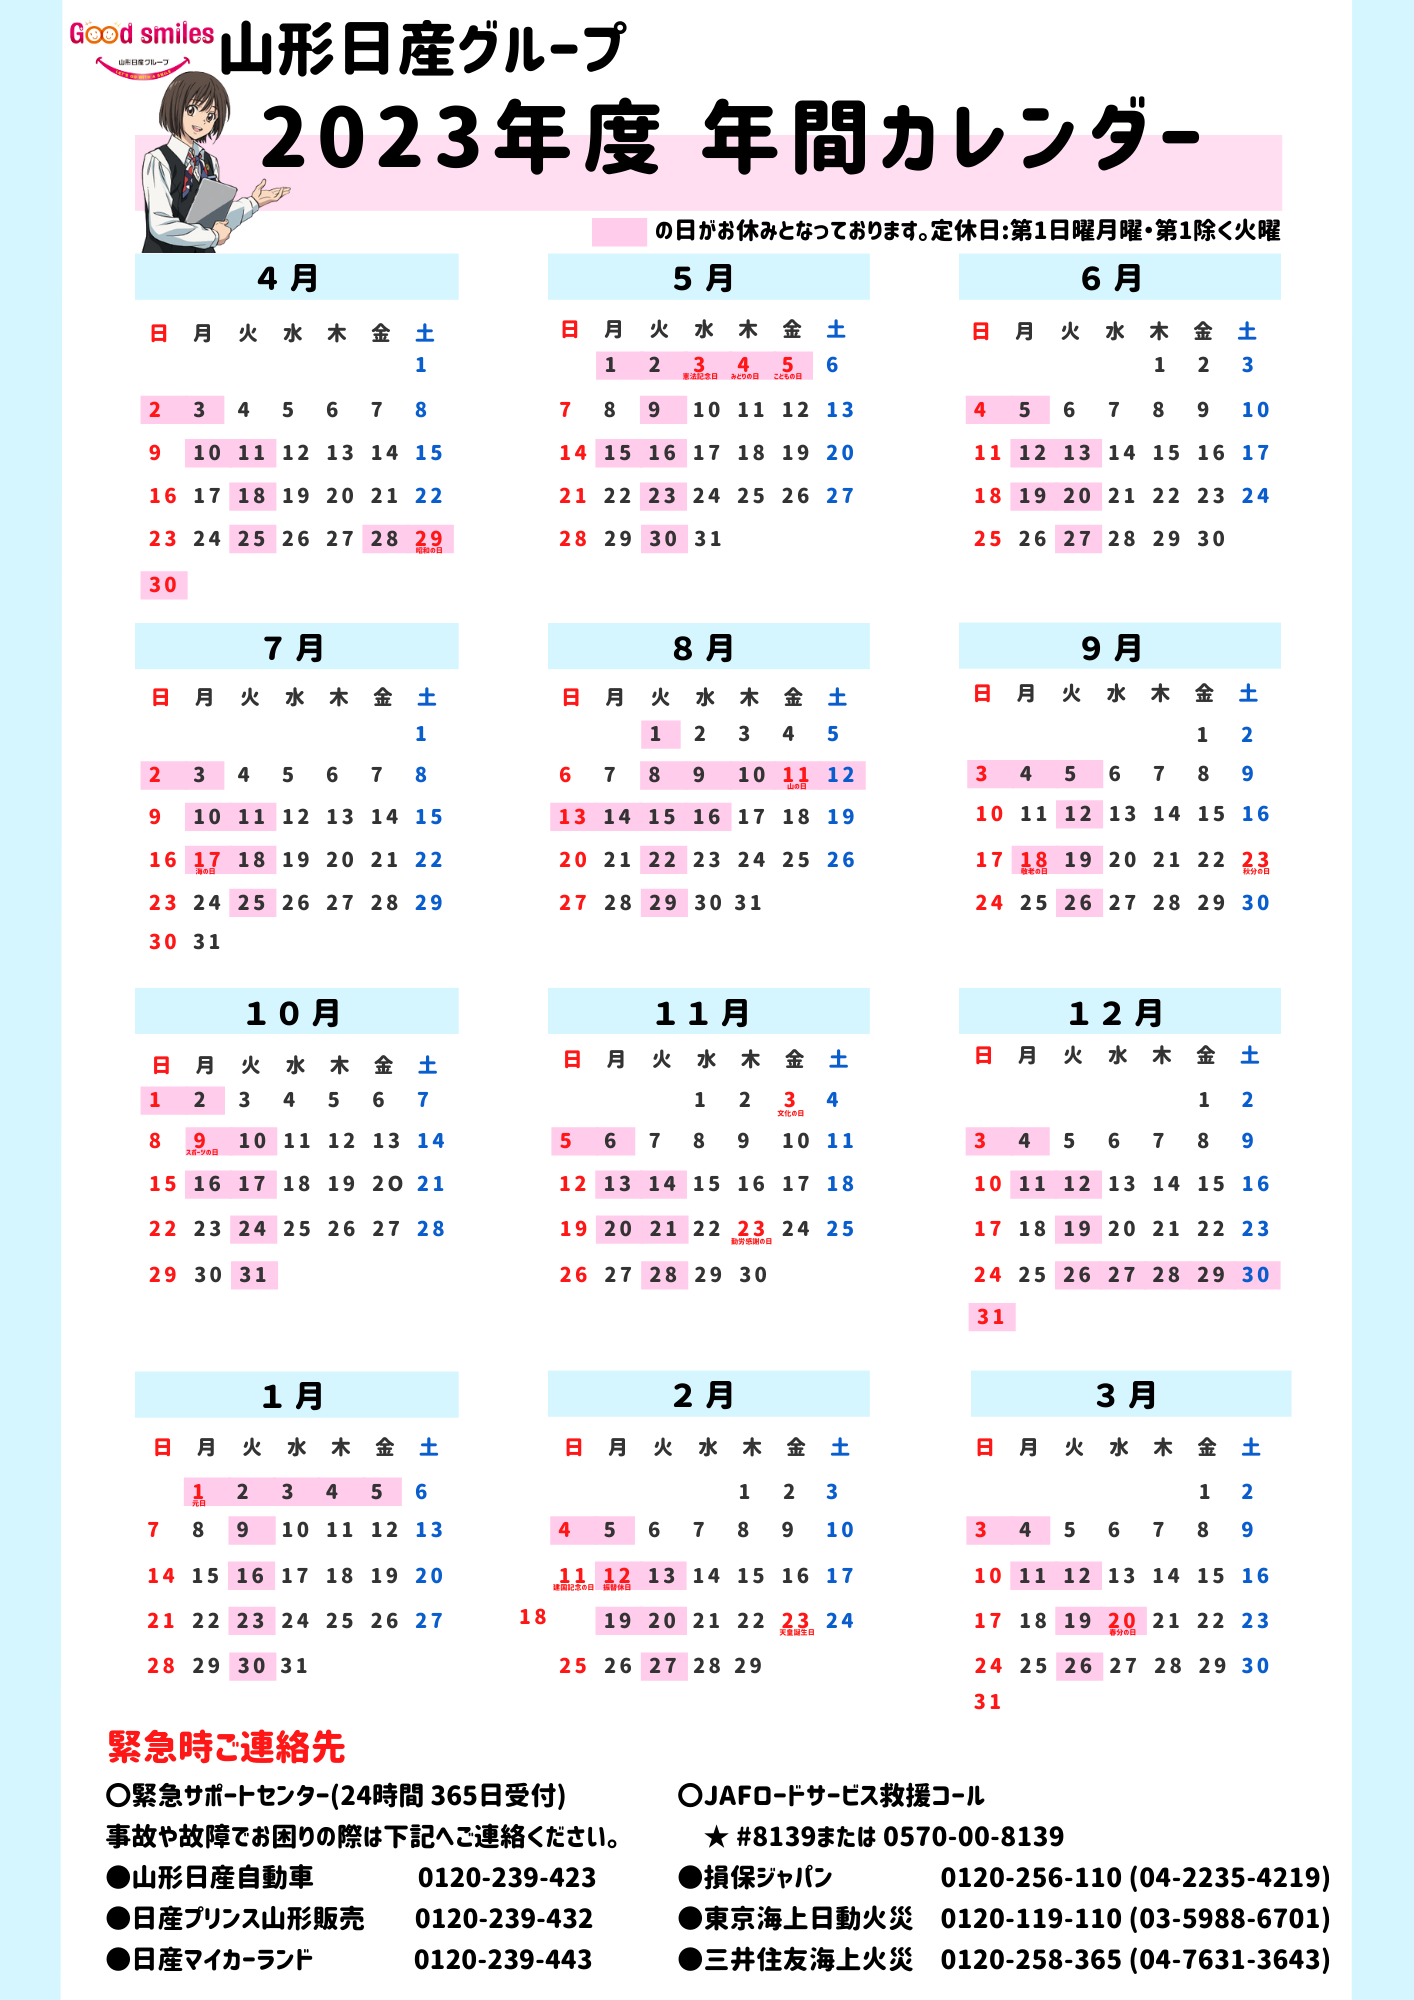 山形日産自動車株式会社 | 2023年度 年間カレンダー